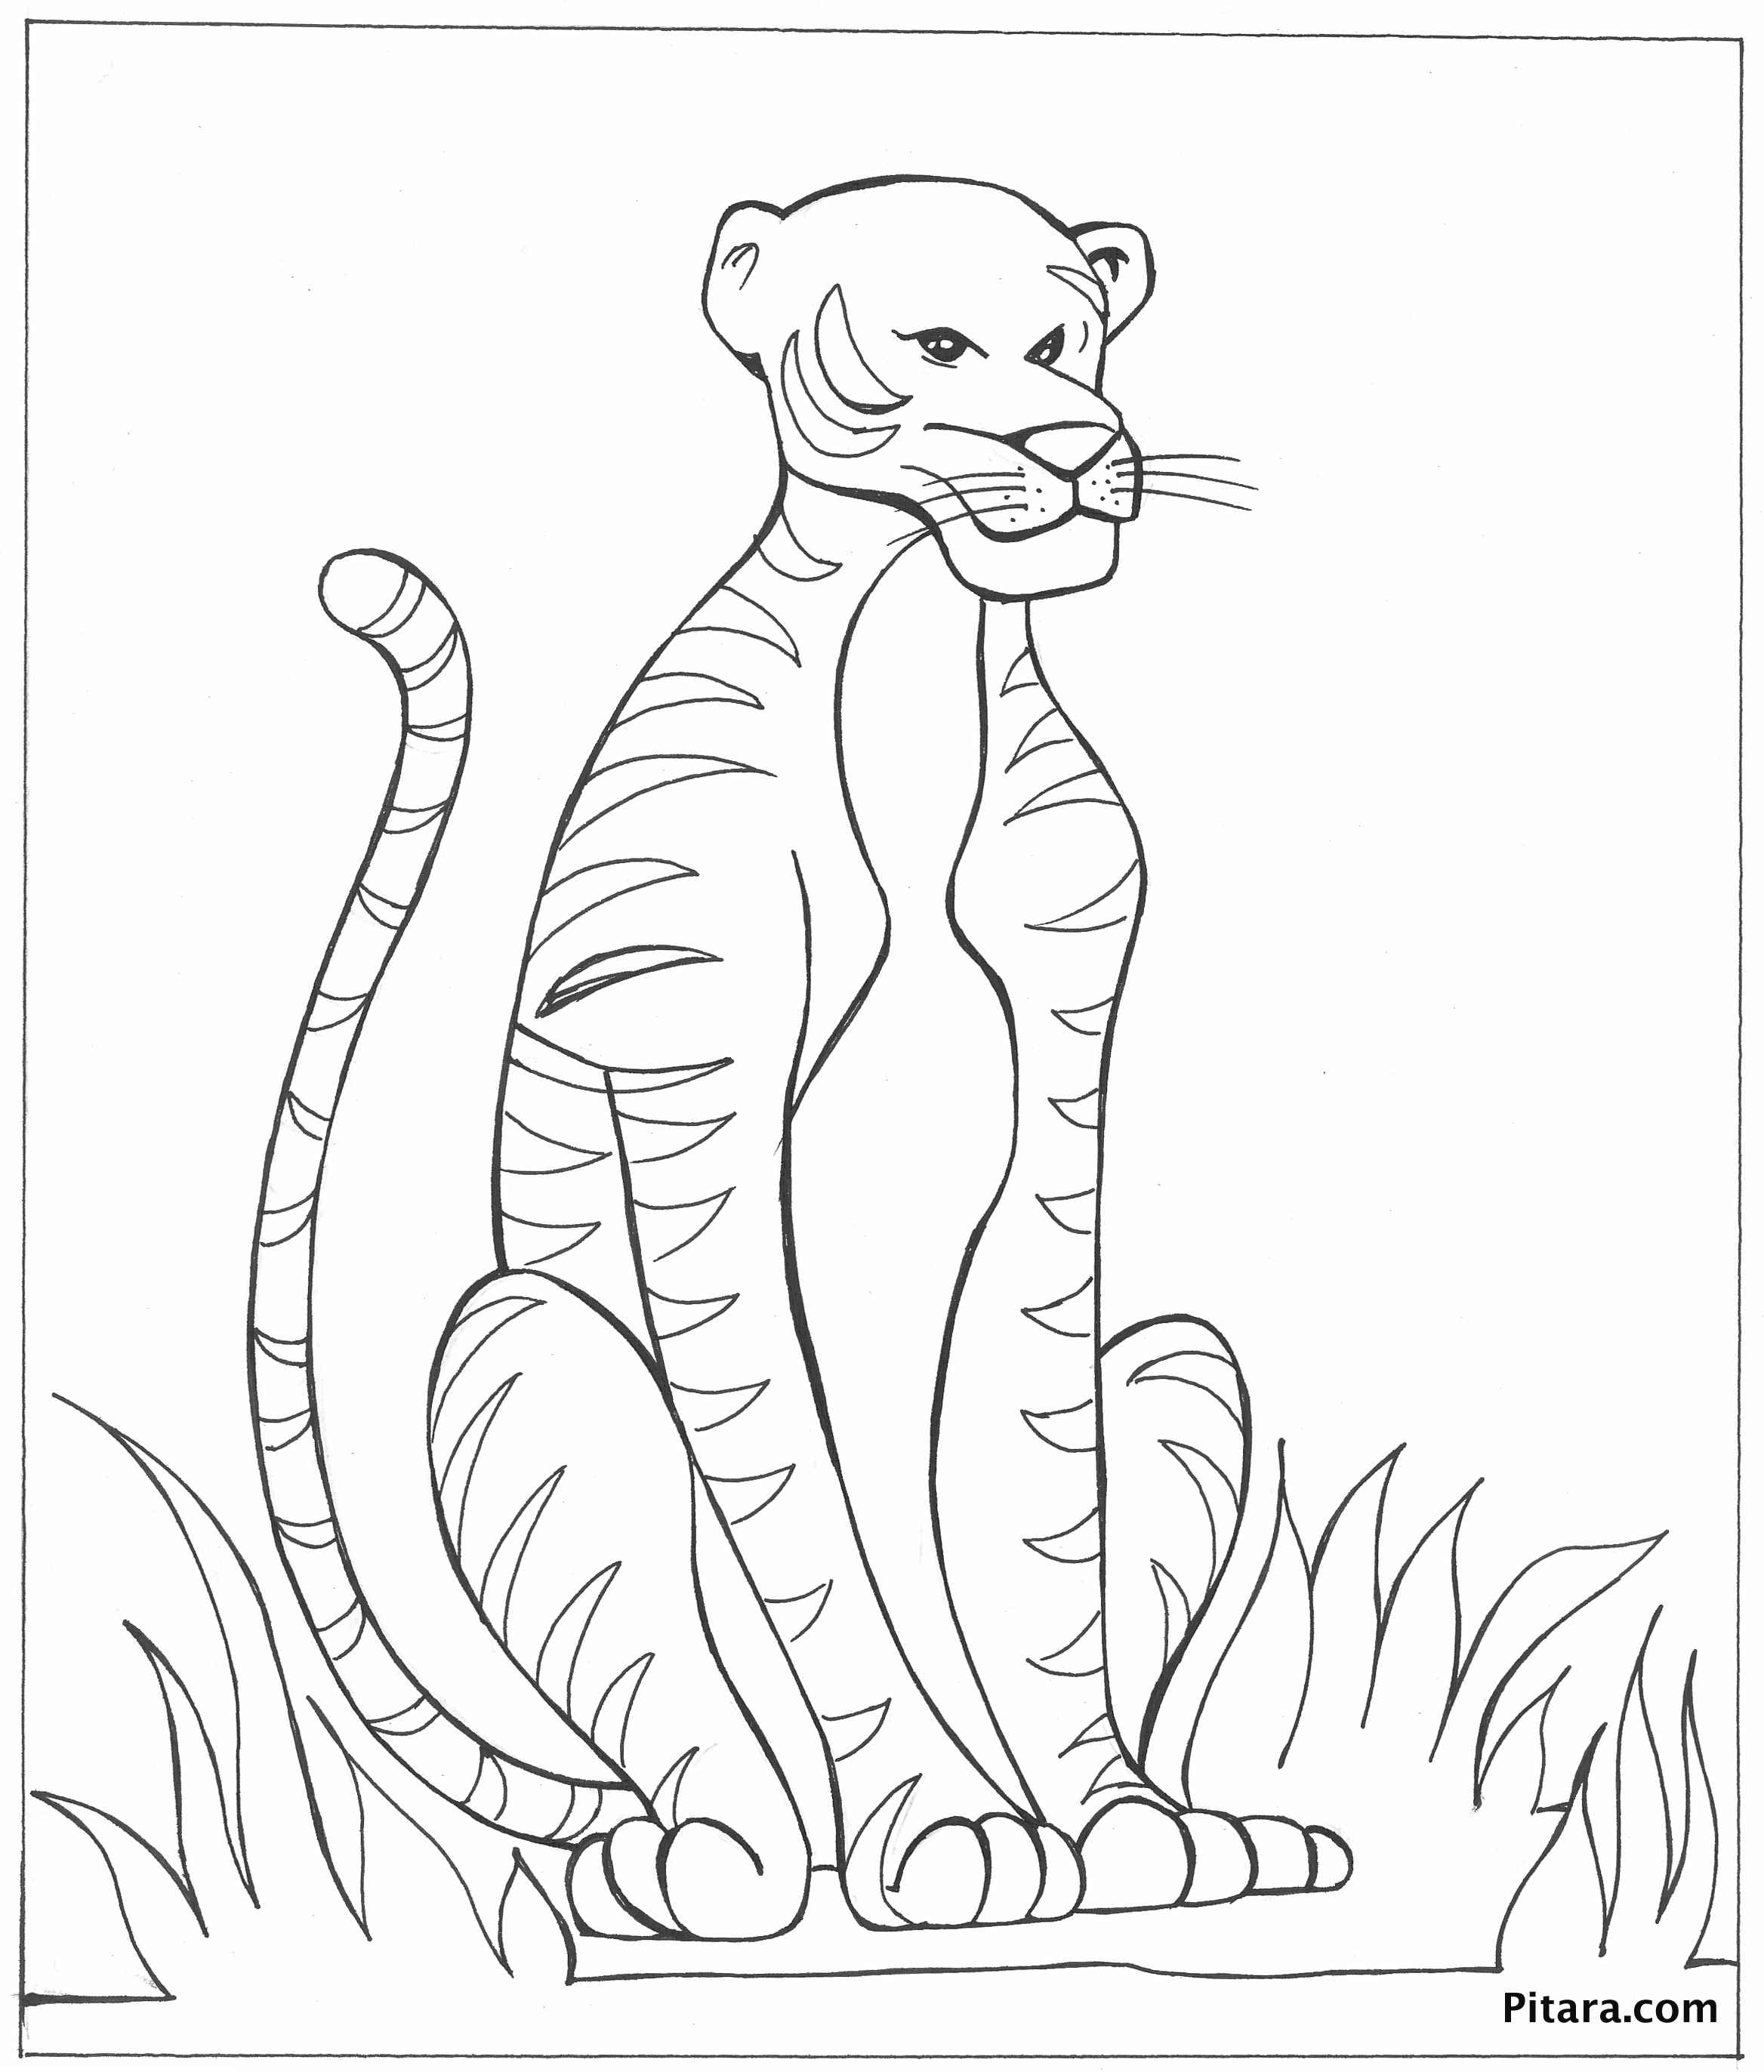 Tranh tô màu với con hổ có khuôn mặt khá bỉ ổi